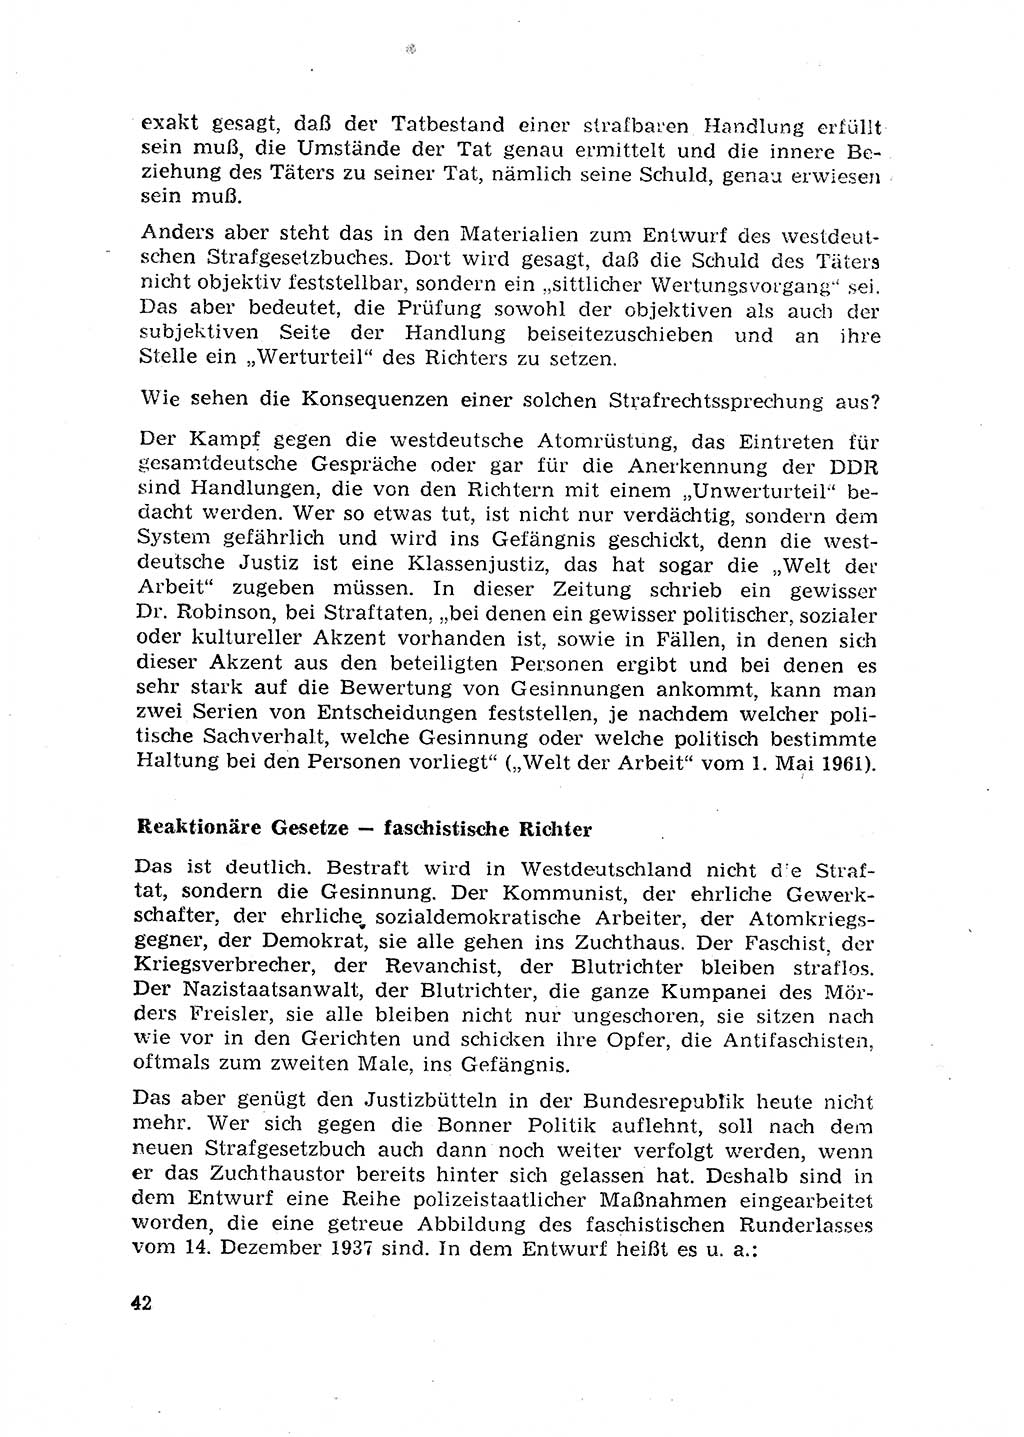 Rechtspflegeerlaß [Deutsche Demokratische Republik (DDR)] 1963, Seite 42 (R.-Pfl.-Erl. DDR 1963, S. 42)